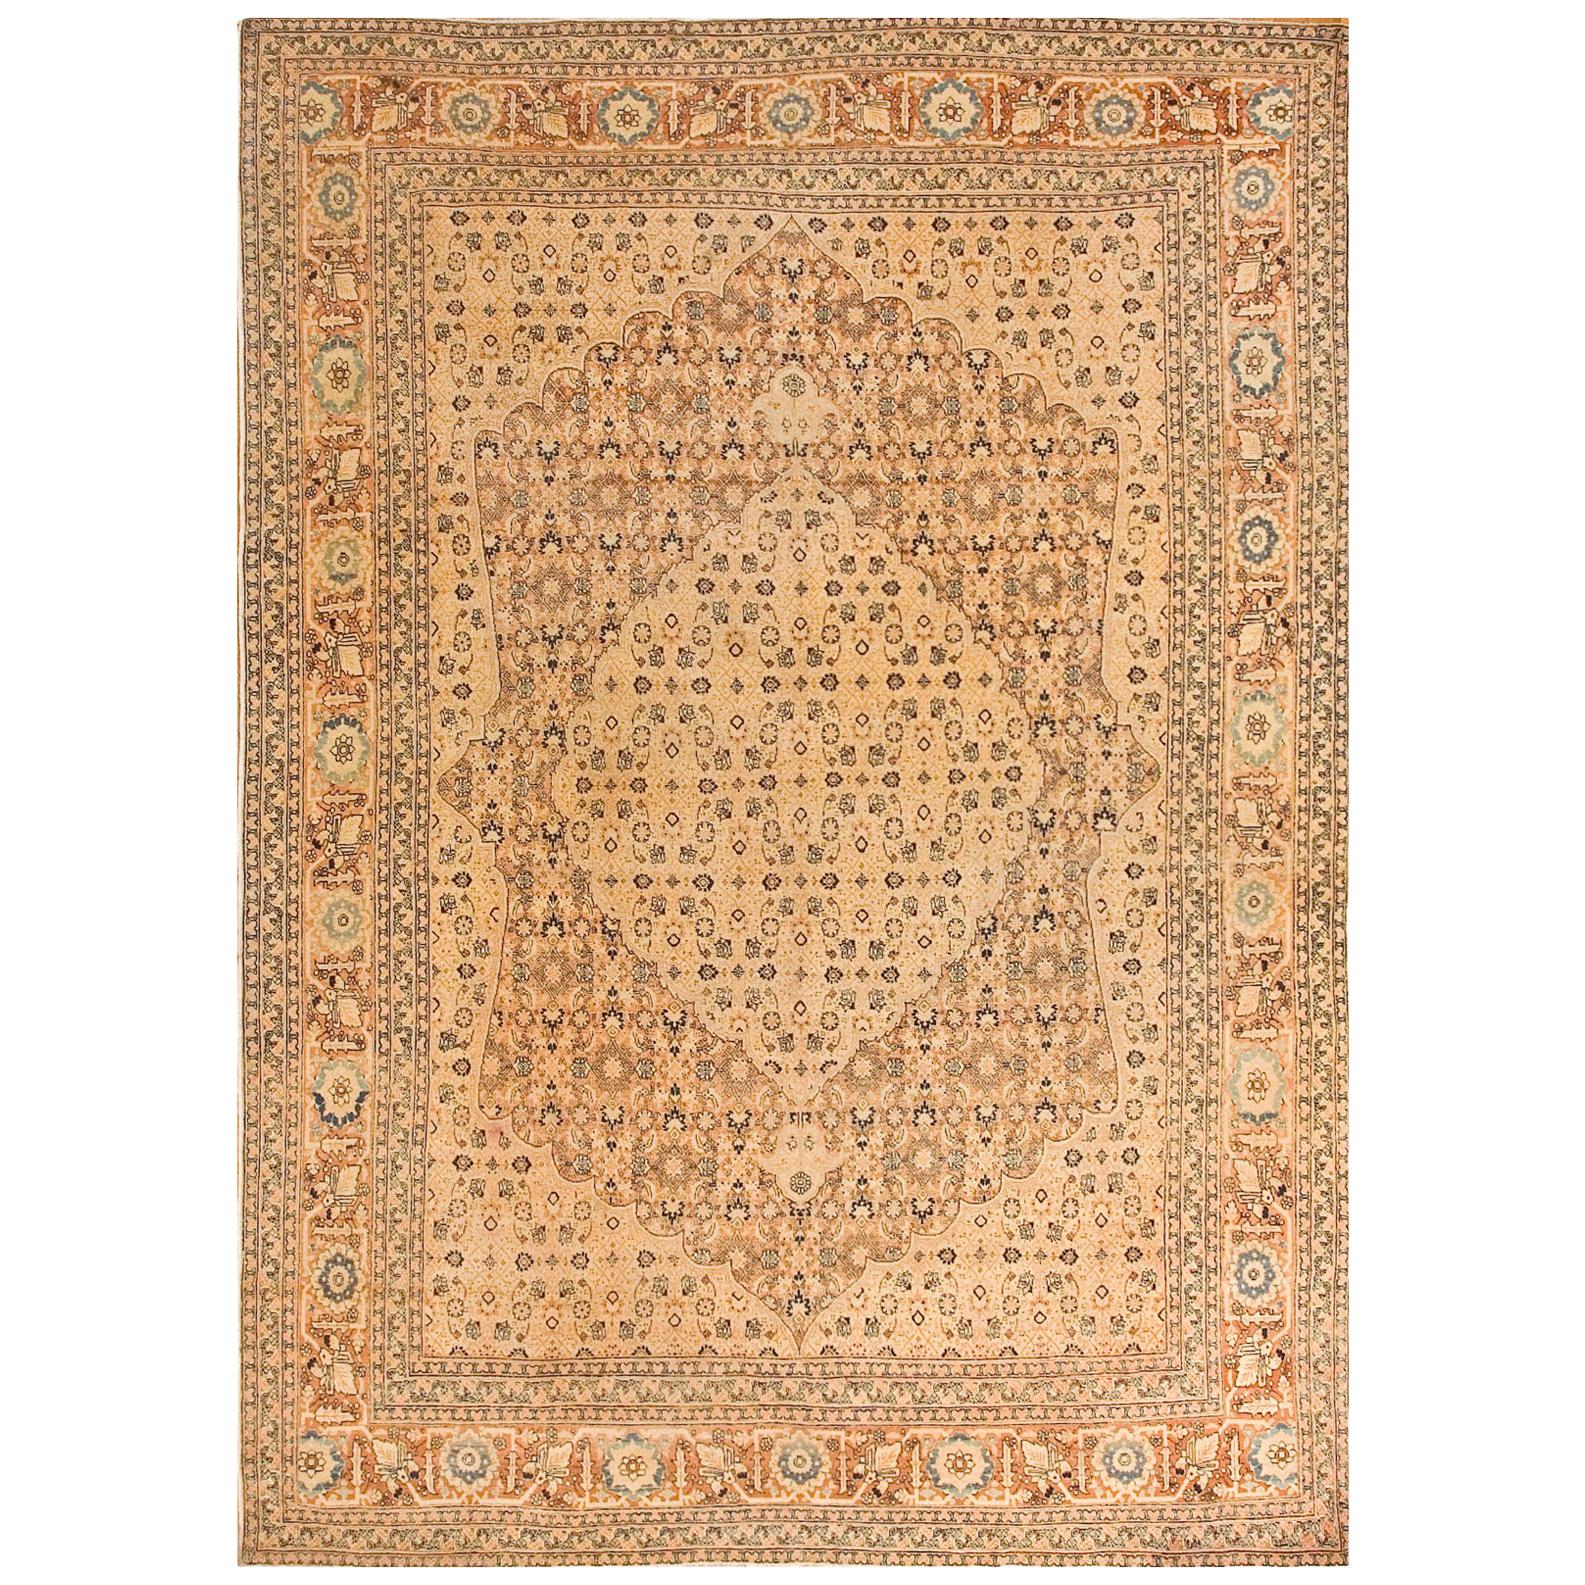 19th Century Persian Tabriz Haji Jalili Carpet ( 7'2" x 10'2" - 218 x 310 )